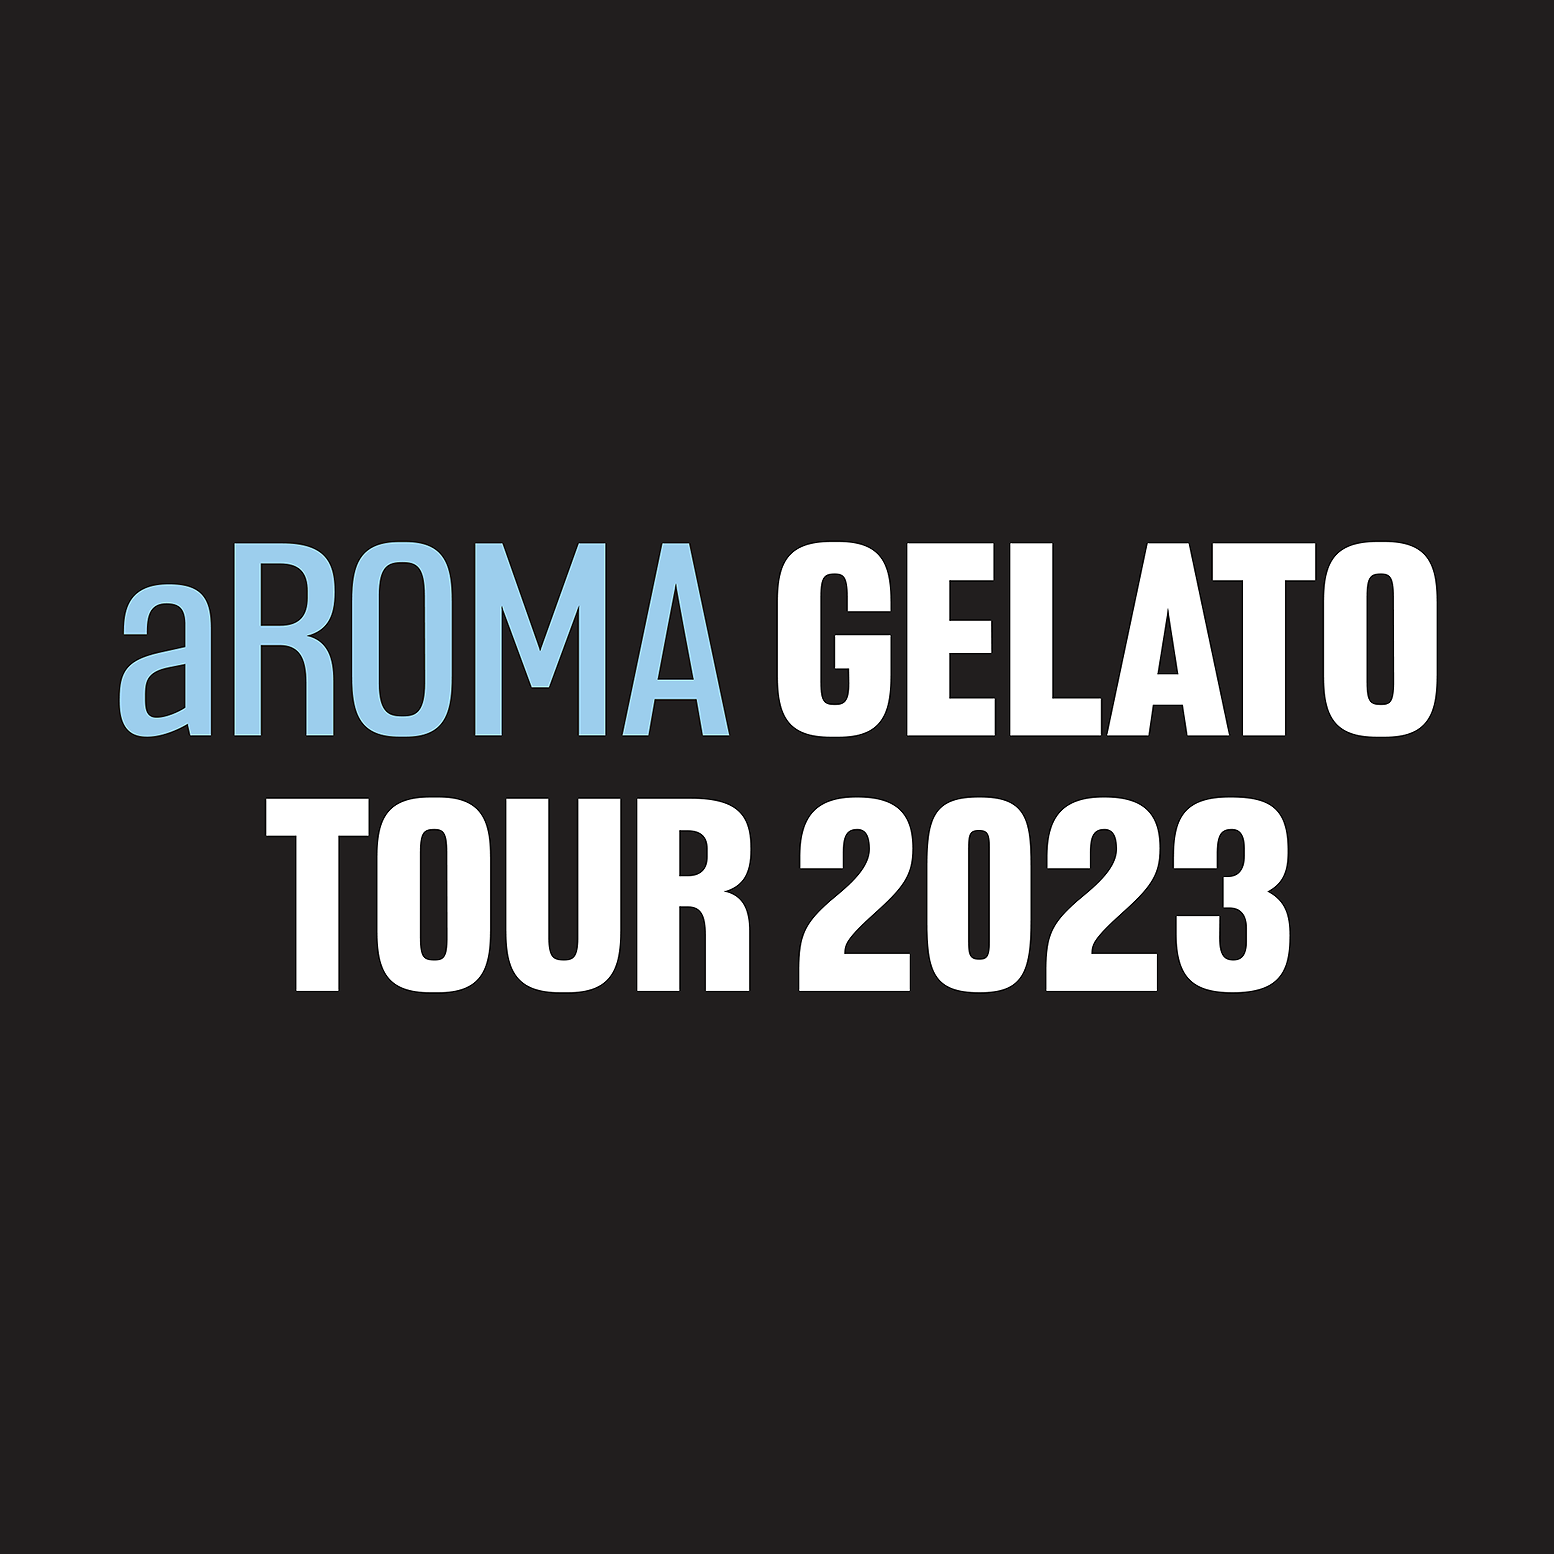 aRoma gelato tour 2023